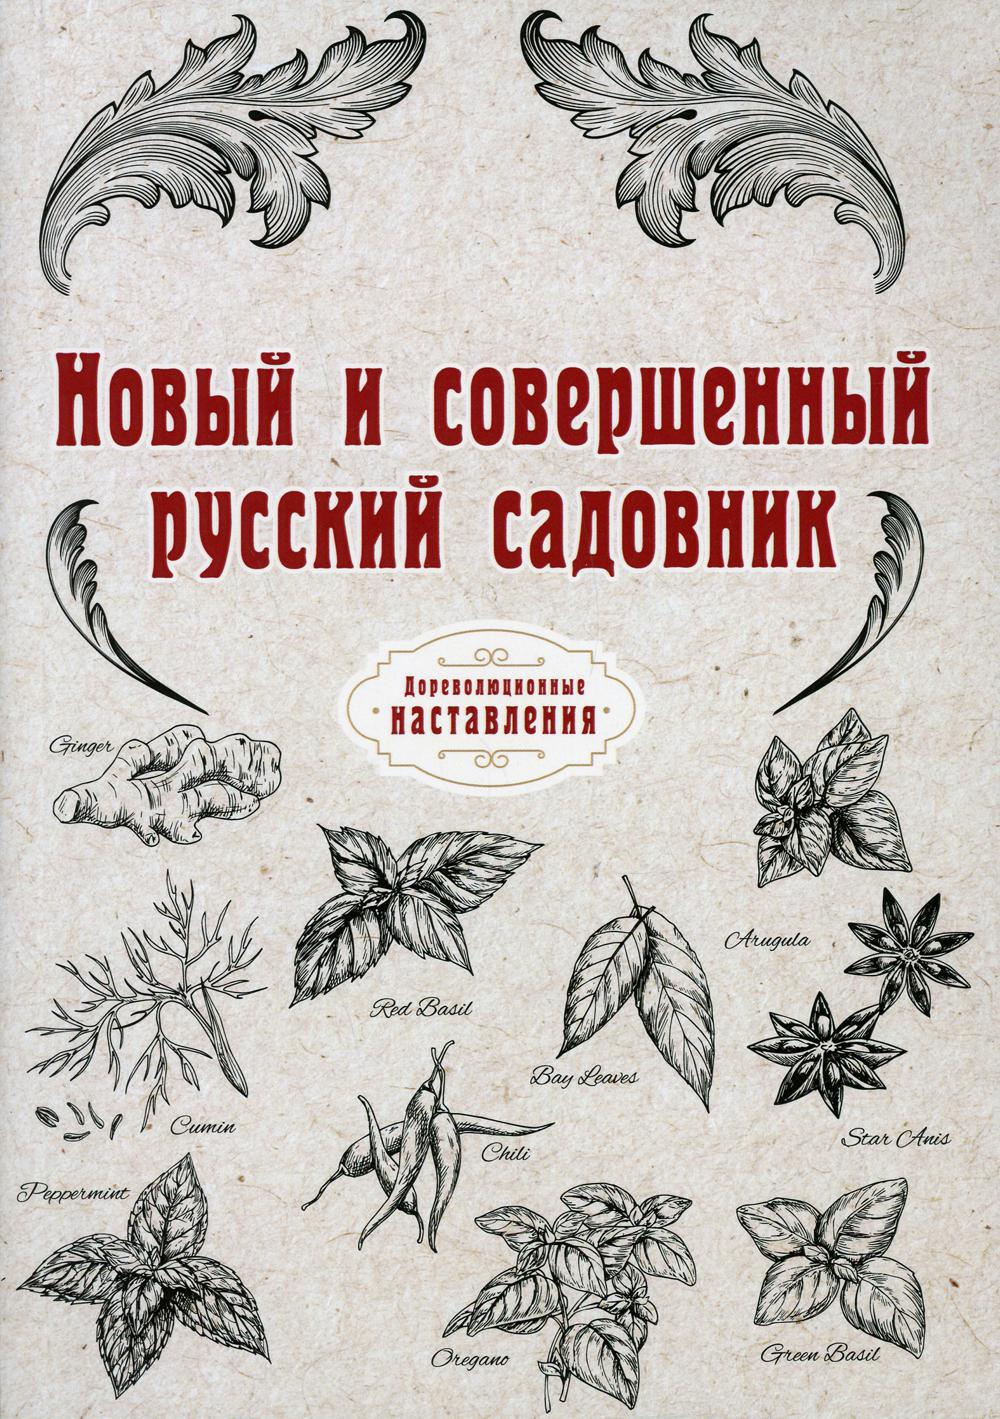 Новый и совершенный русский садовник (репринтное издание)